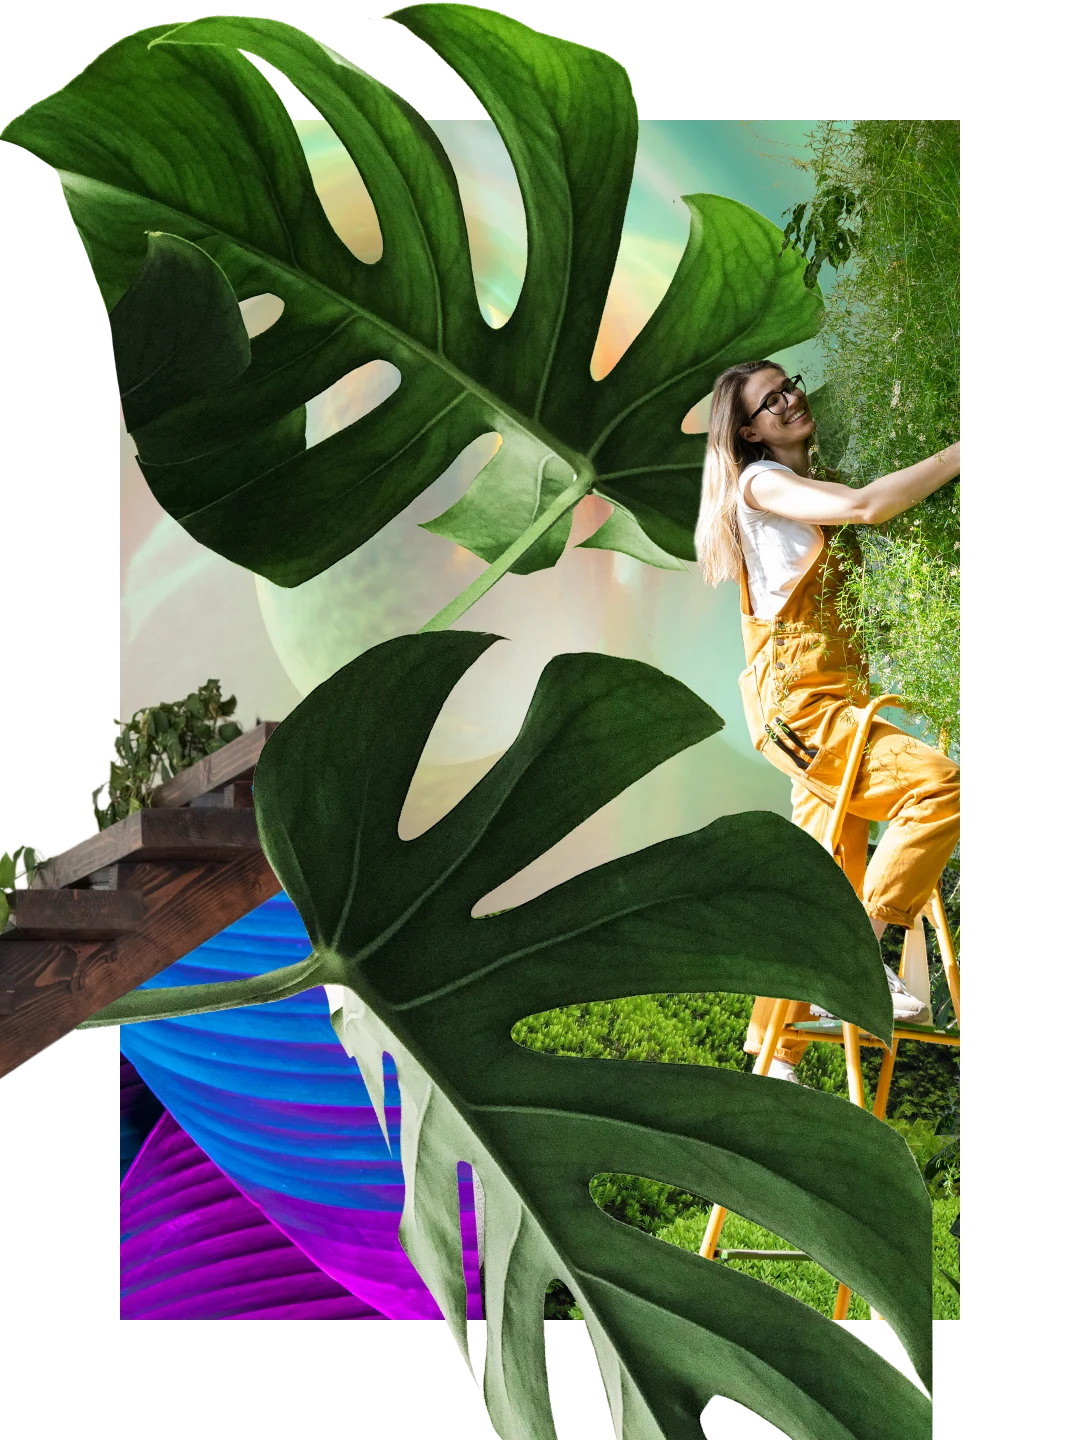 Collage de plantes. Deux grandes feuilles de monstera. En arrière-plan, escalier avec du feuillage. Femme blanche en salopette jaune sur une échelle s’occupant d’une plante.
